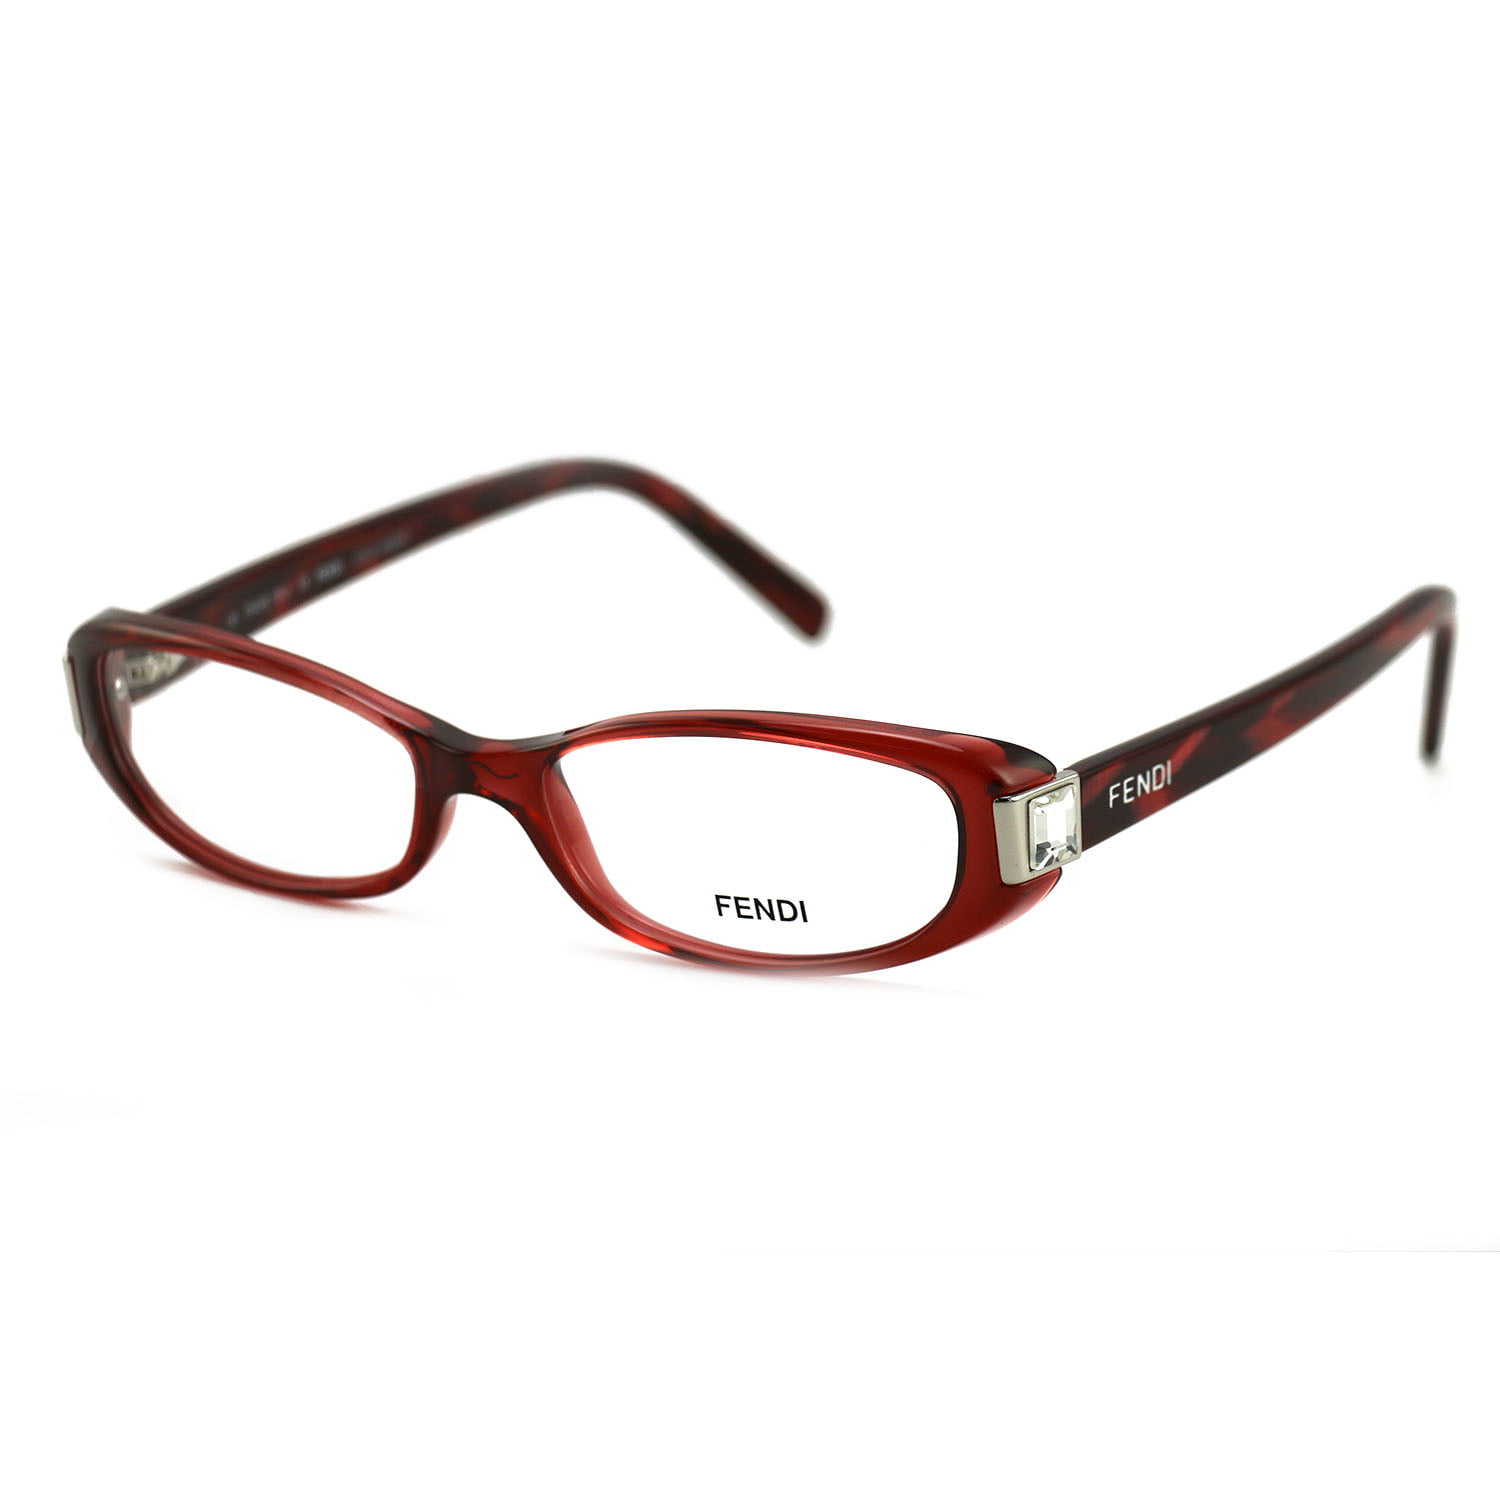 Fendi Women's Eyeglasses FF666R 603 Burgundy 51 16 135 Frames Oval